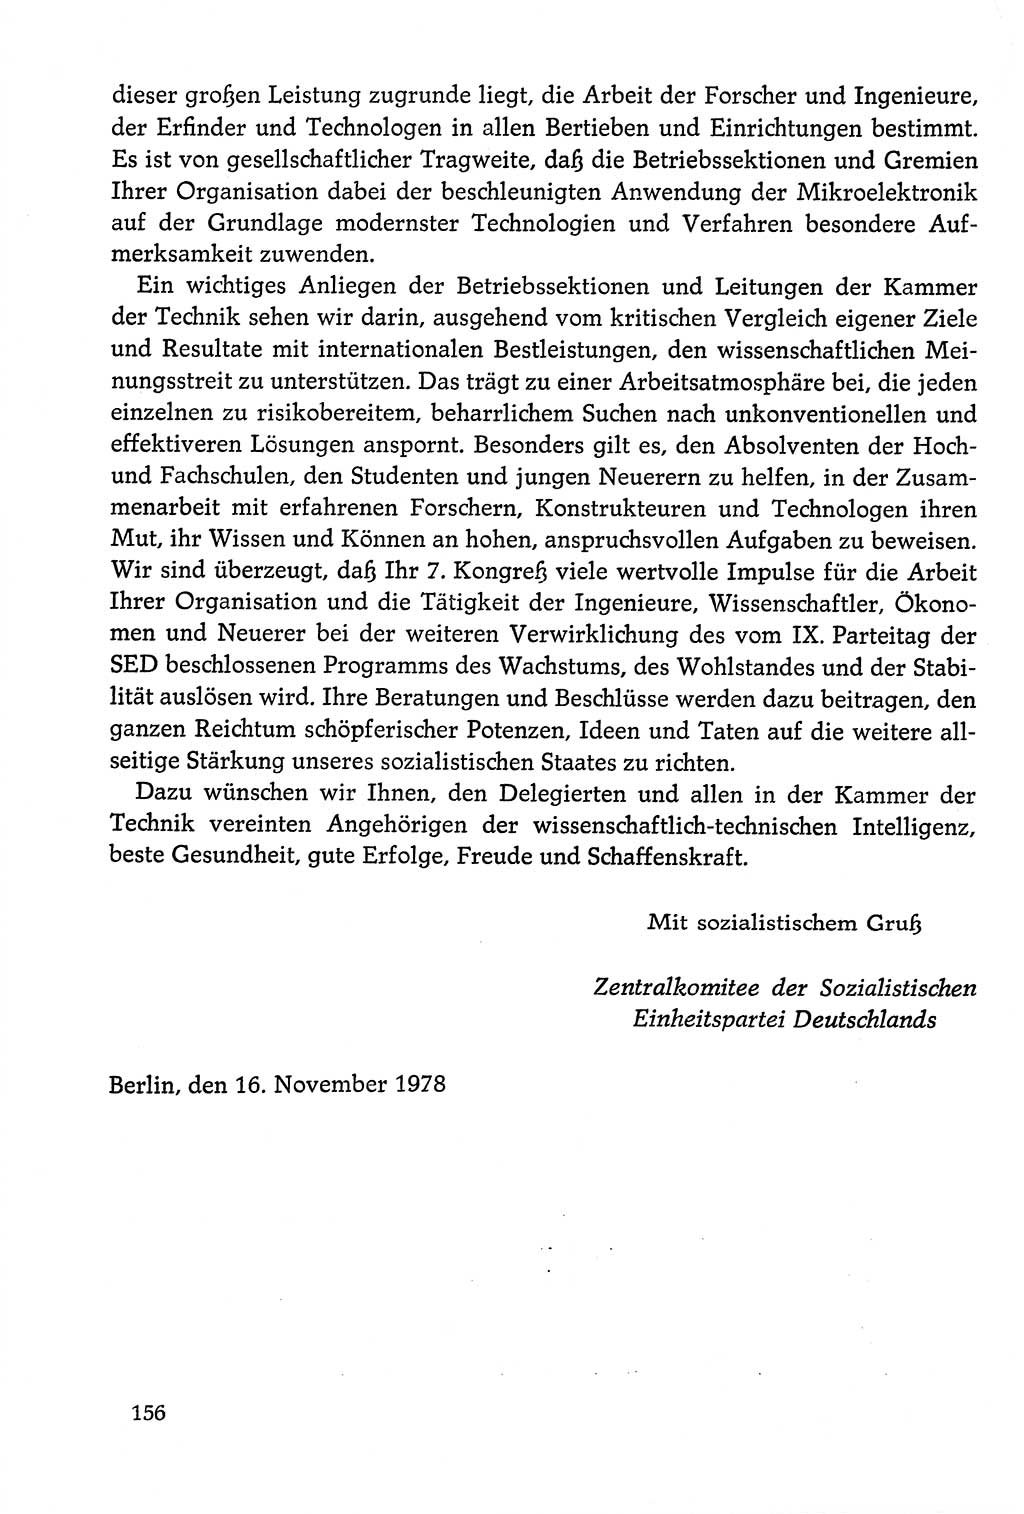 Dokumente der Sozialistischen Einheitspartei Deutschlands (SED) [Deutsche Demokratische Republik (DDR)] 1978-1979, Seite 156 (Dok. SED DDR 1978-1979, S. 156)